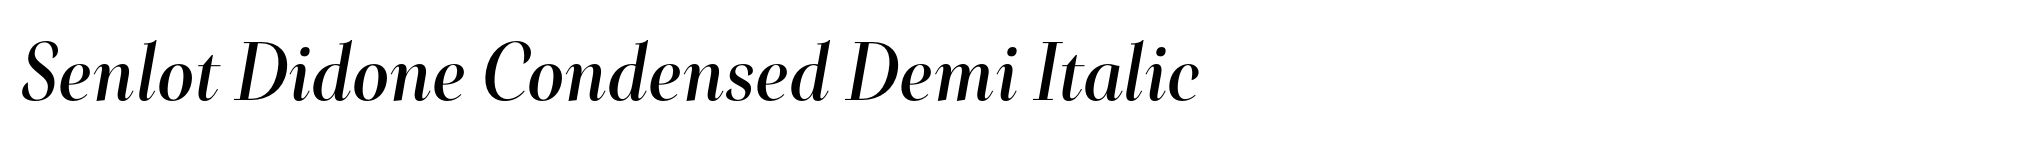 Senlot Didone Condensed Demi Italic image